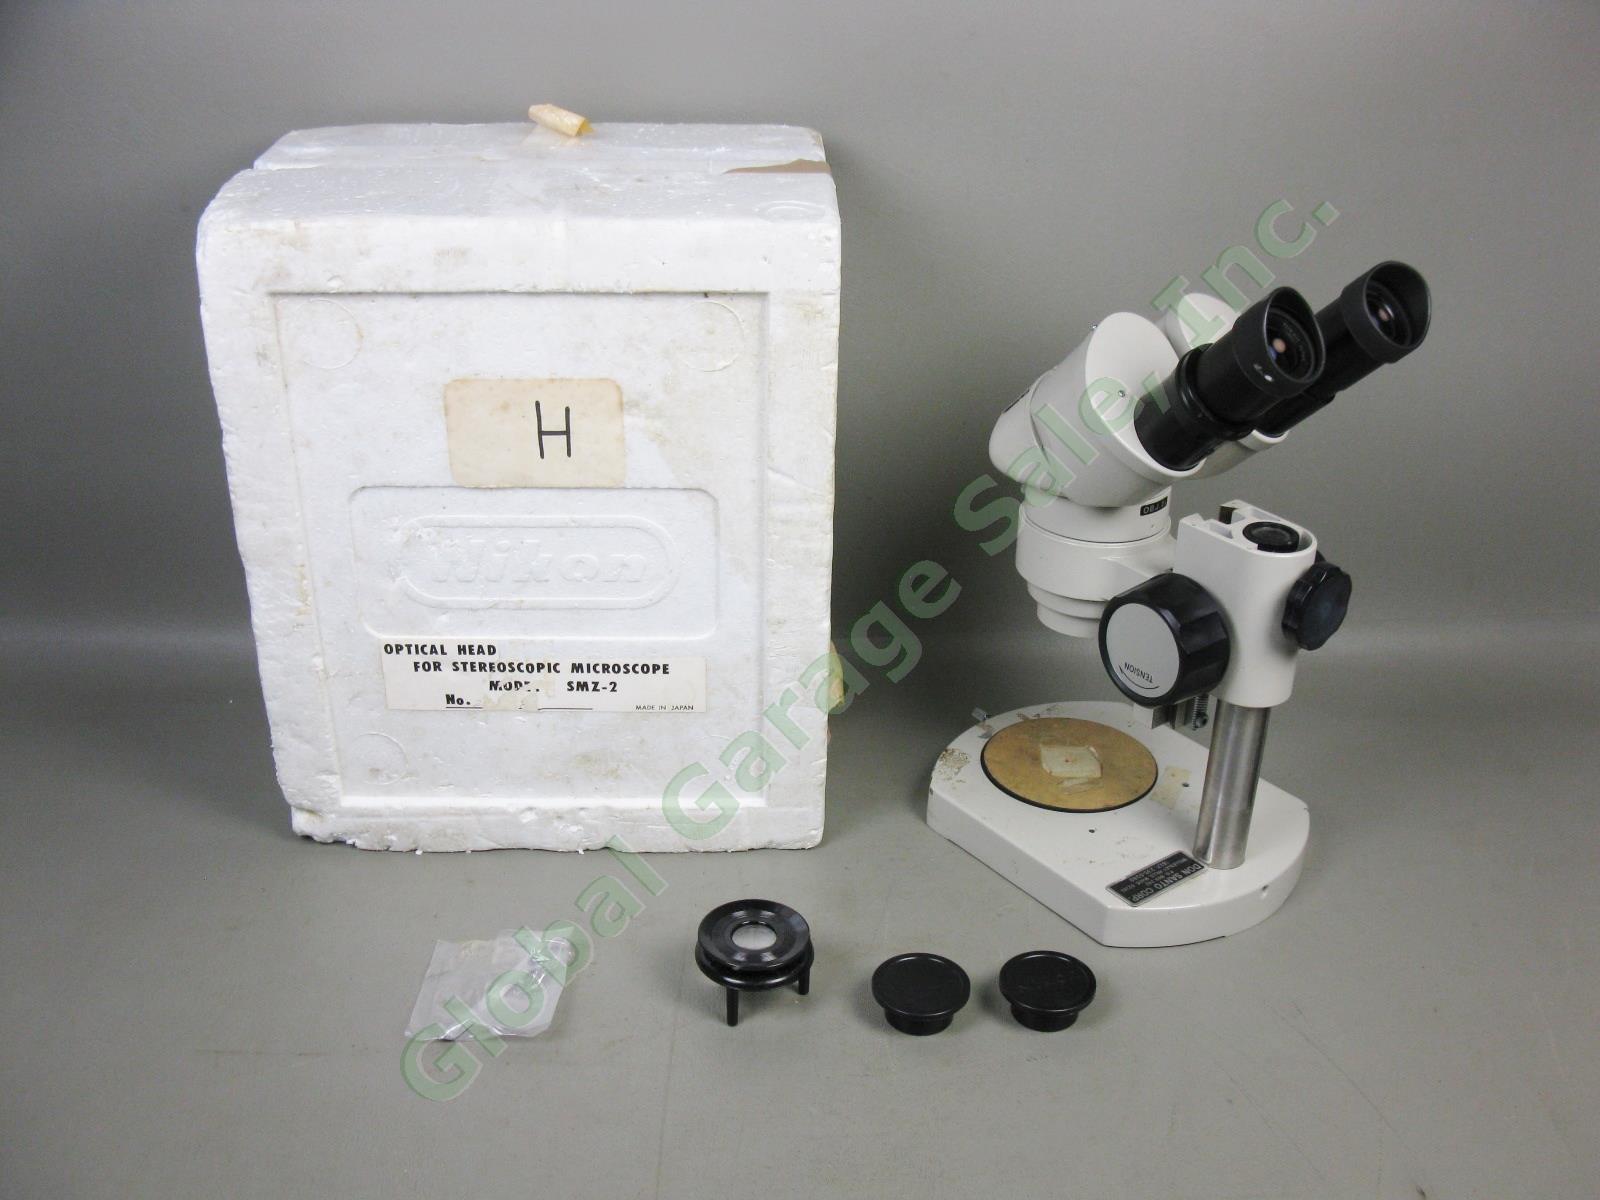 Nikon OBJ.2x Binocular Microscope W/ 10x/20 Eyepieces Stand #217542 No Reserve!